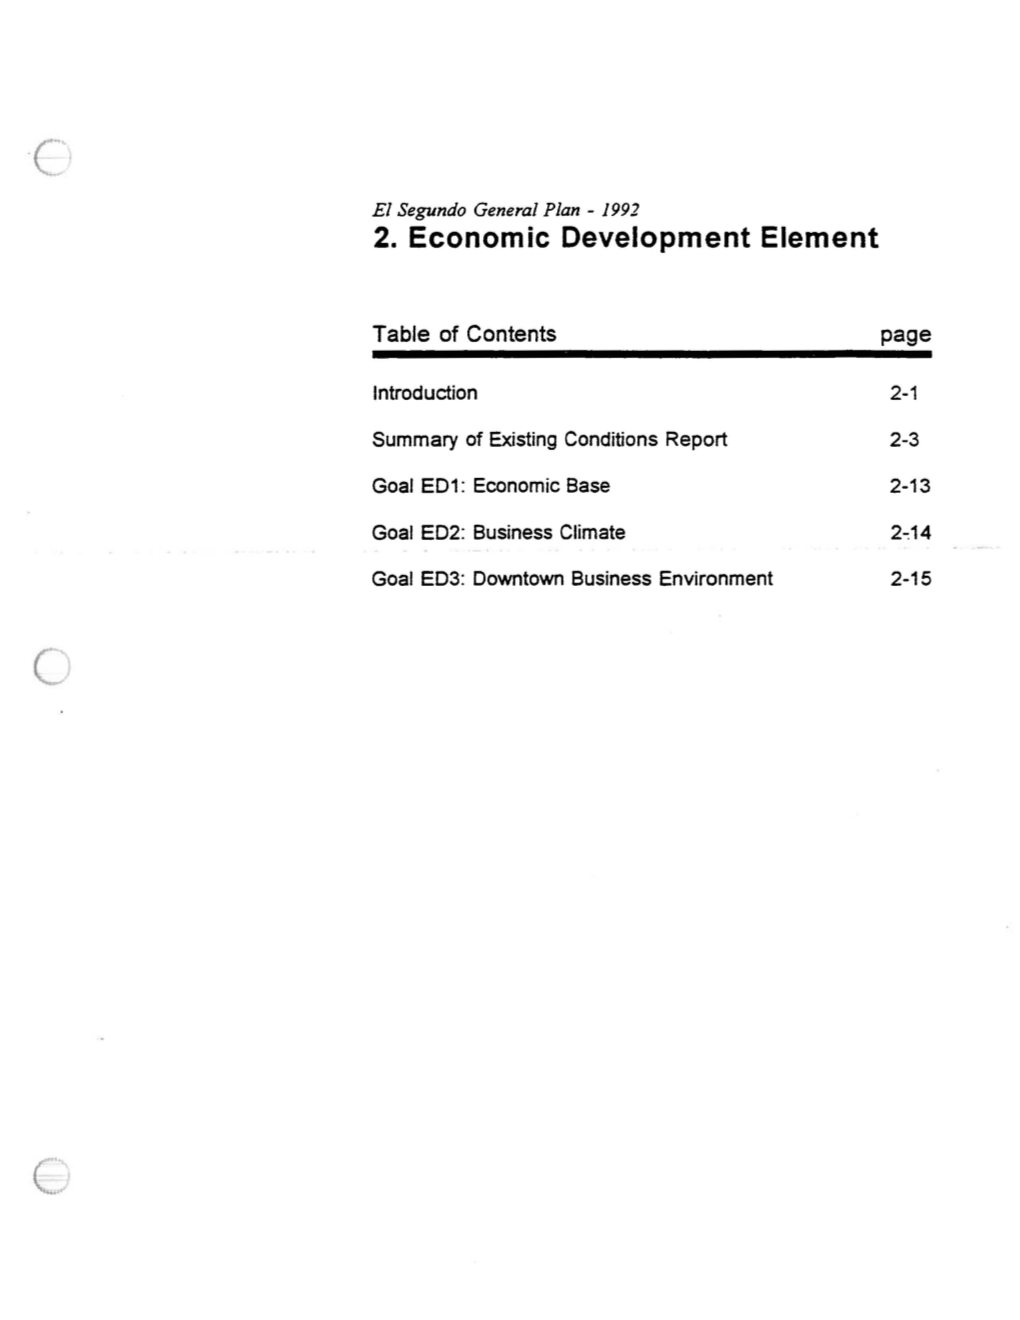 2. Economic Development Element